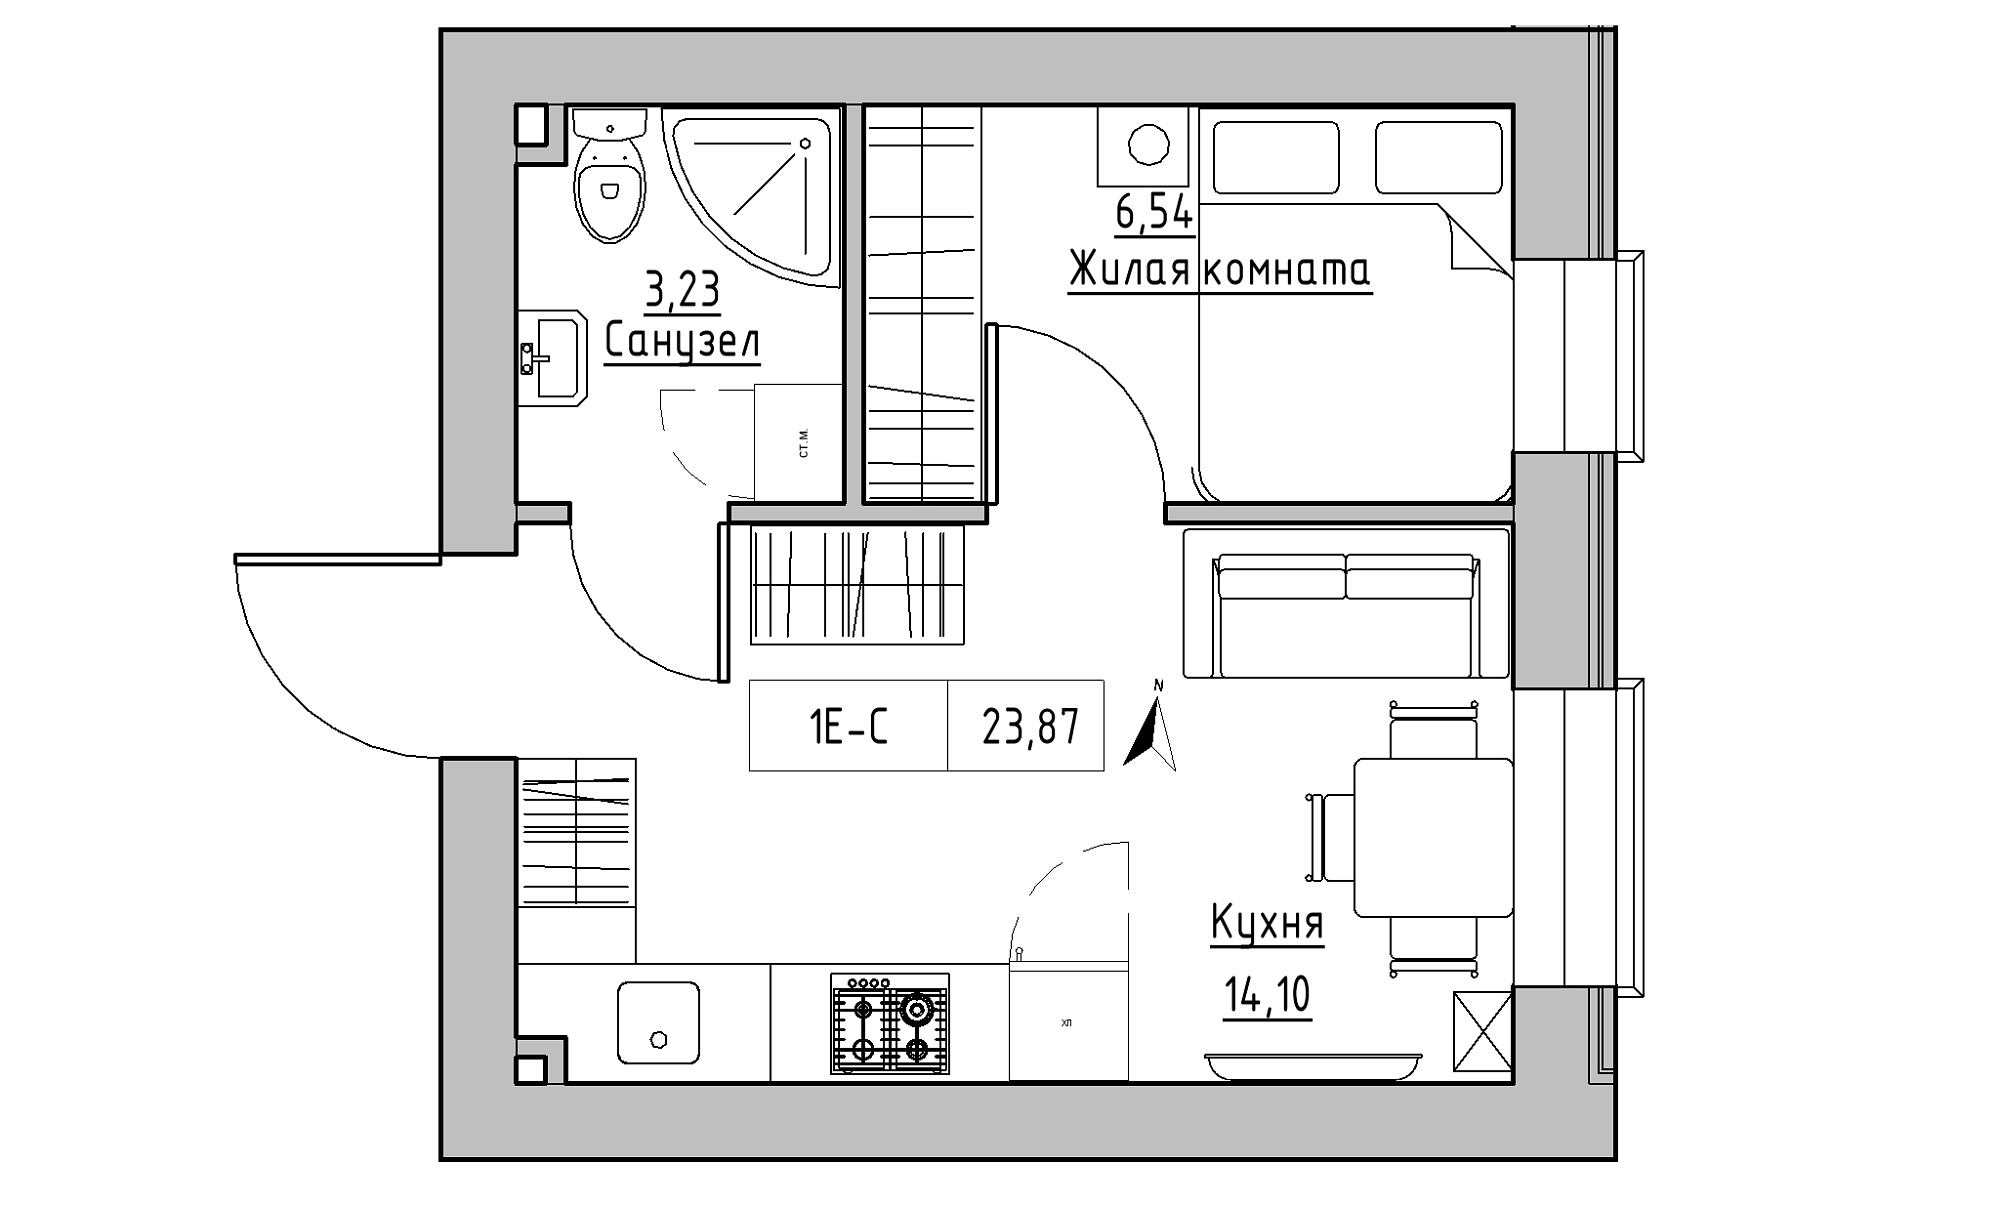 Планування 1-к квартира площею 23.87м2, KS-023-01/0004.